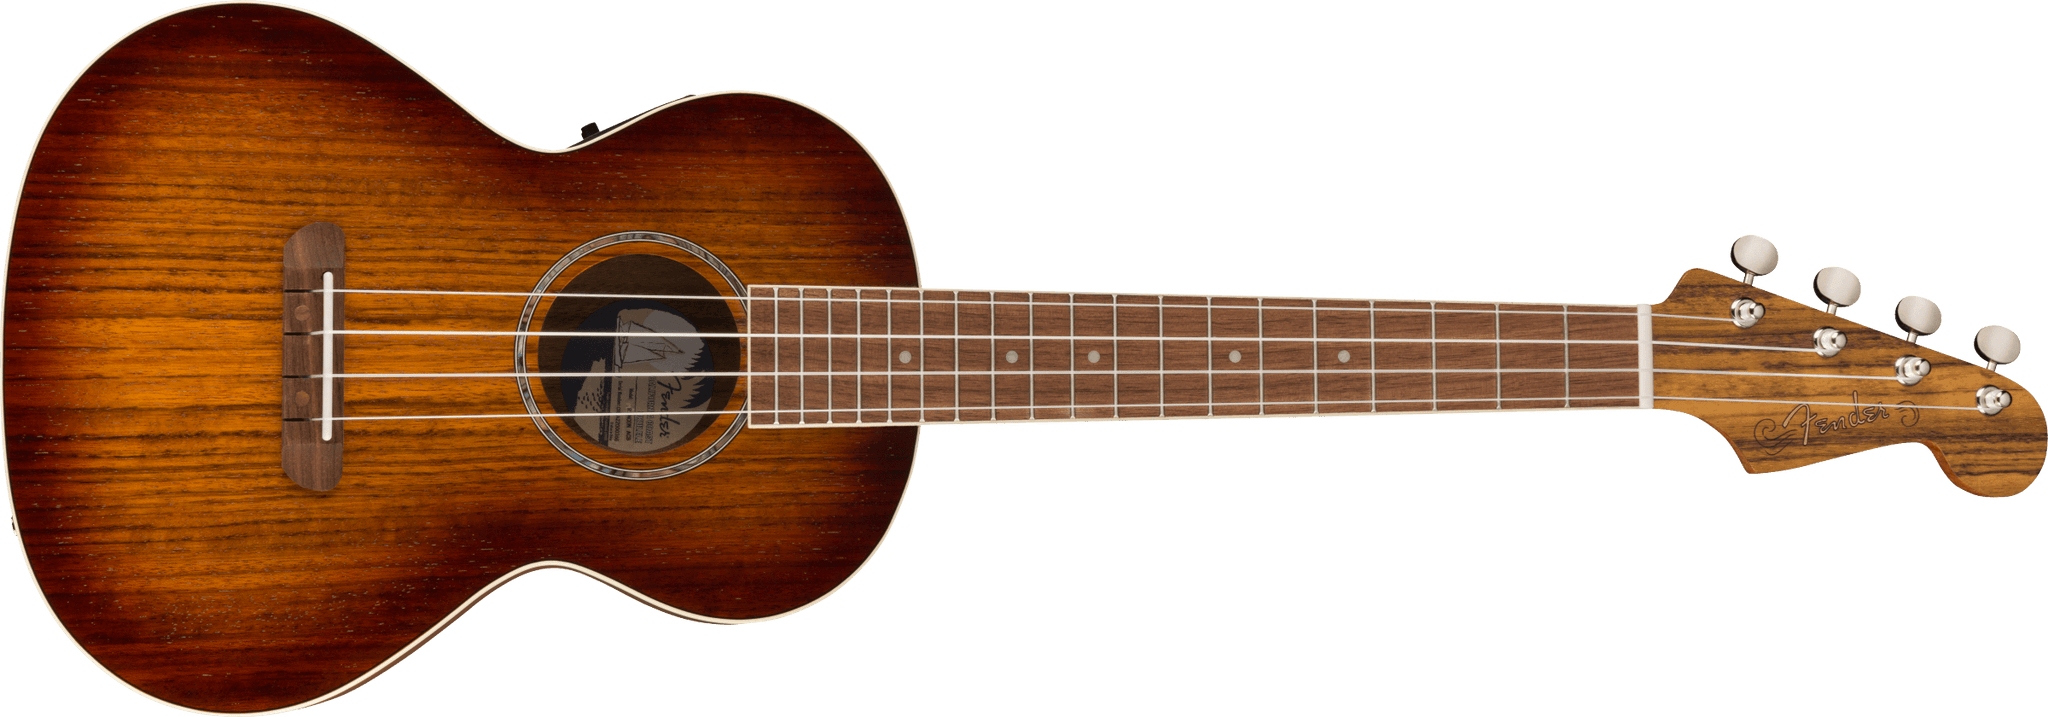 Fender Rincon Tenor Ukulele